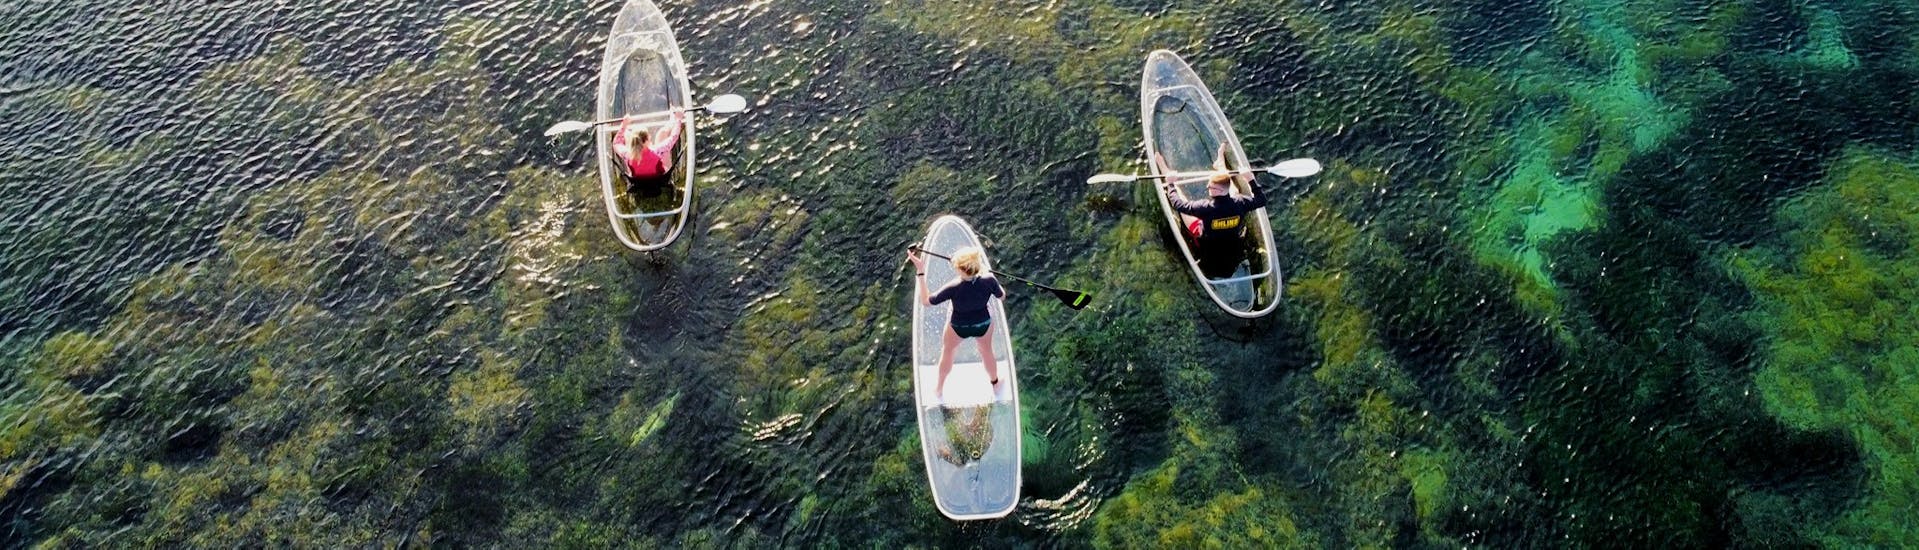 Leichte Kayak & Kanu-Tour in Bormes-les-Mimosas - Côte d'Azur.